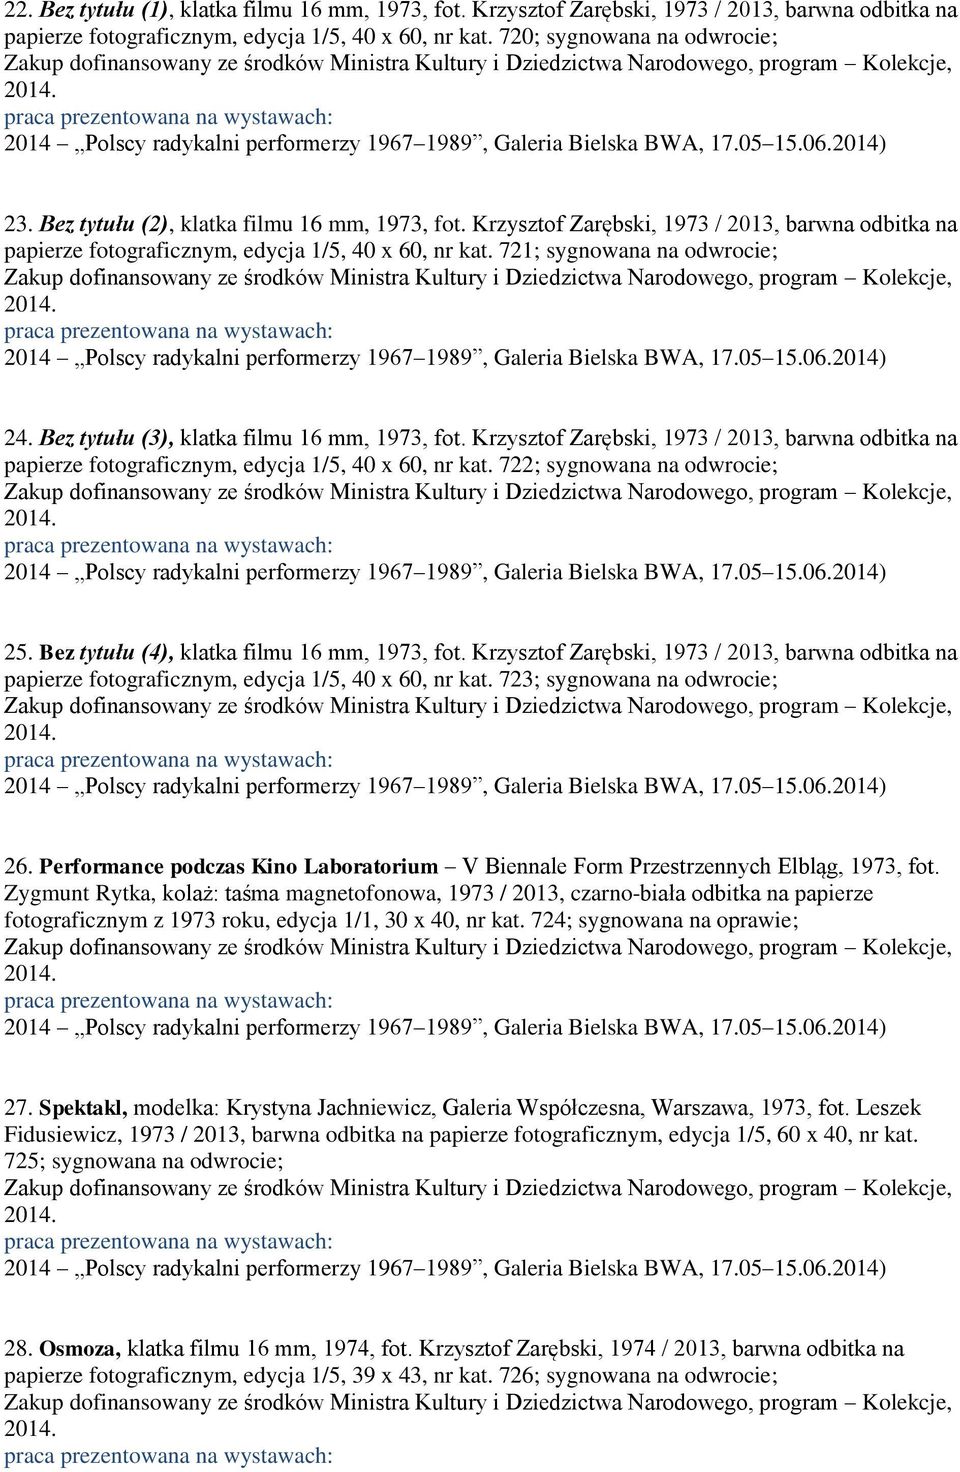 Bez tytułu (3), klatka filmu 16 mm, 1973, fot. Krzysztof Zarębski, 1973 / 2013, barwna odbitka na papierze fotograficznym, edycja 1/5, 40 x 60, nr kat. 722; sygnowana na odwrocie; 25.